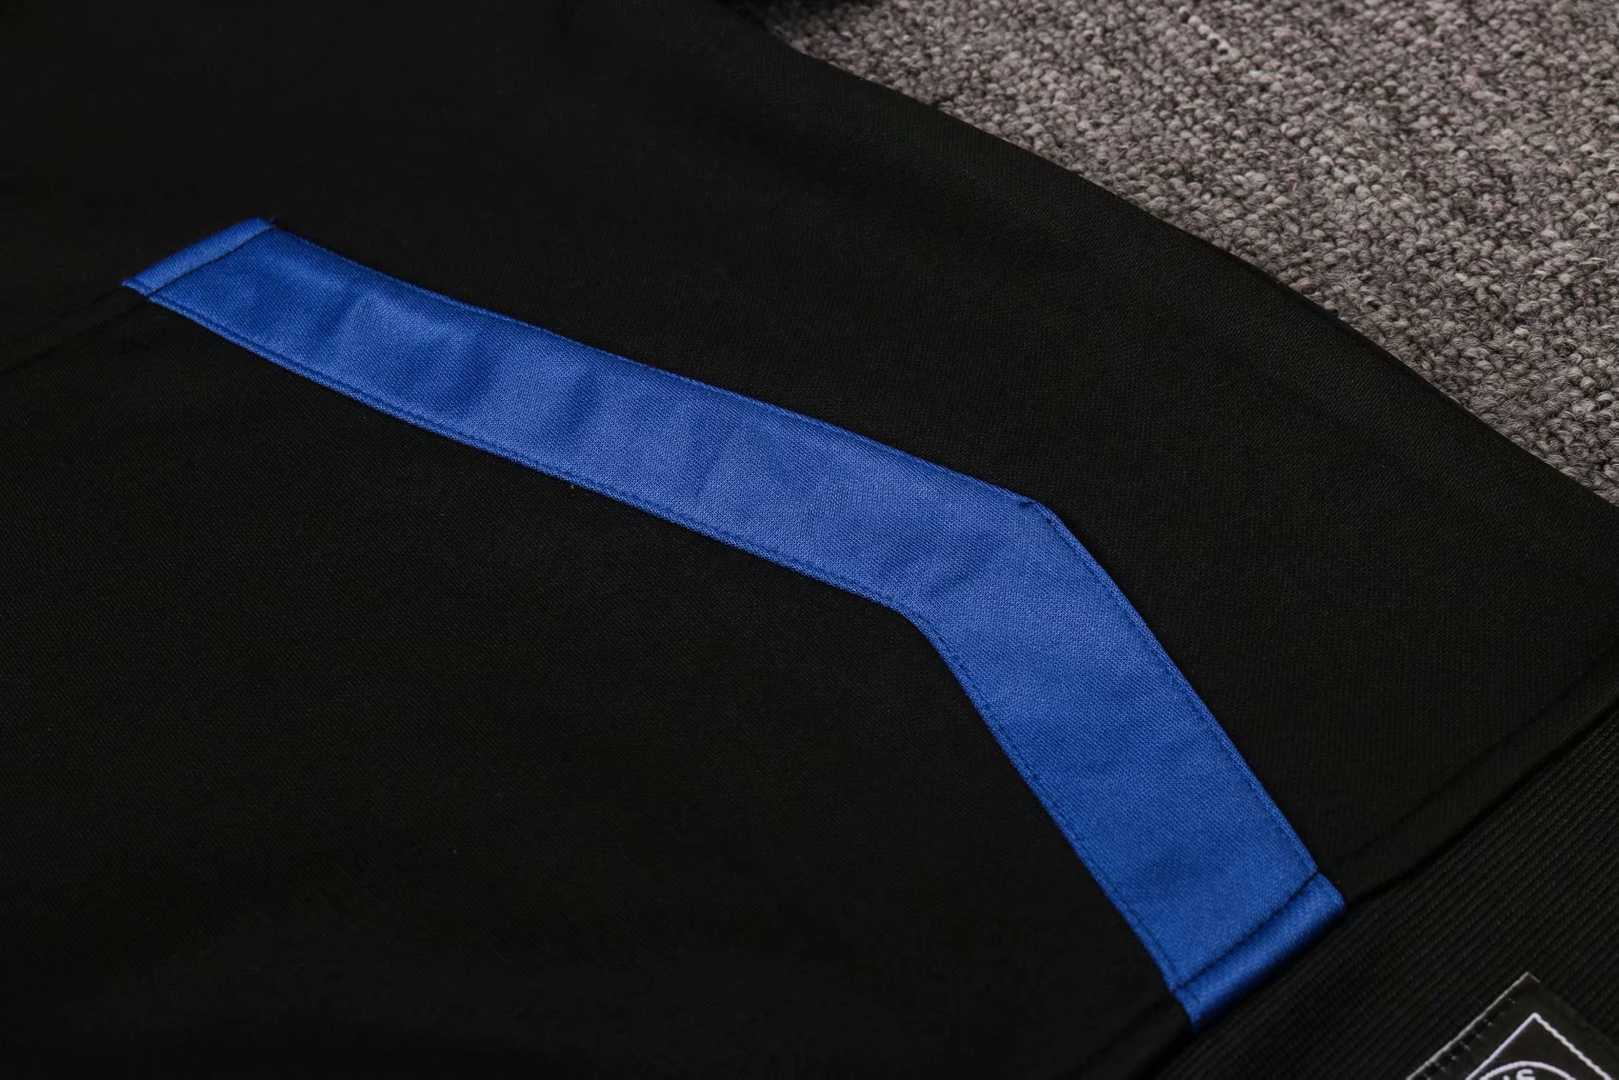 2020/21 PSG x Jordan Hoodie Black Mens Soccer Training Suit(Jacket + Pants)